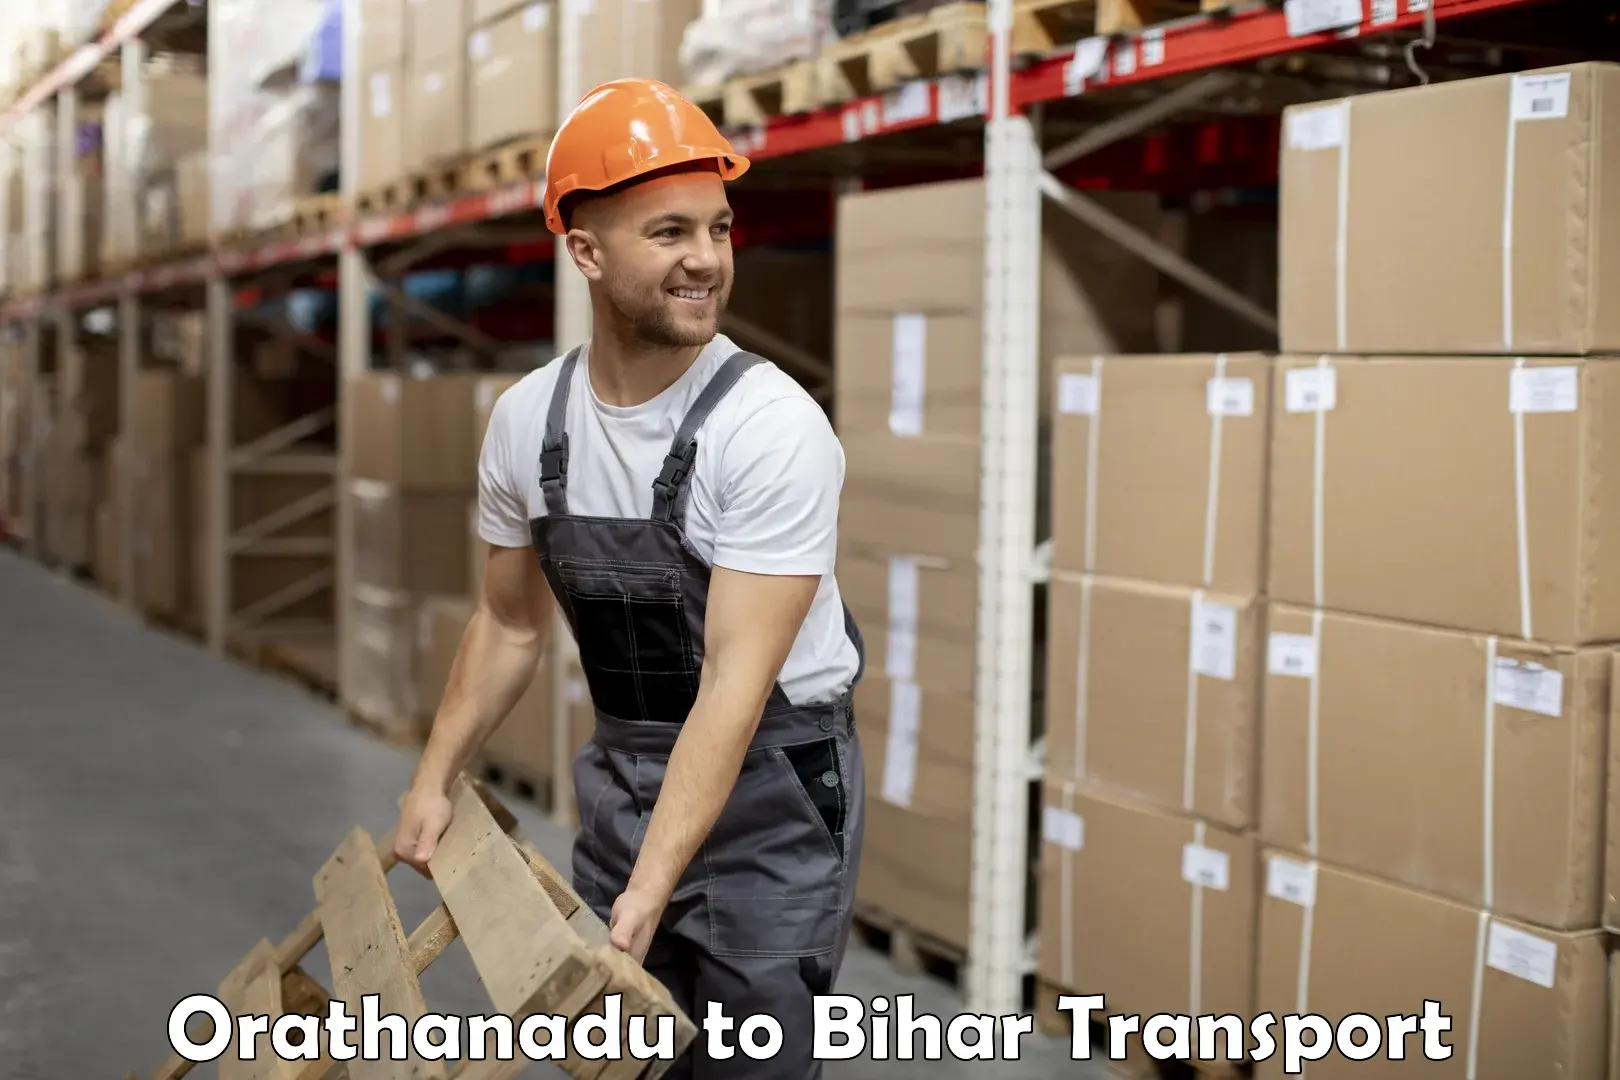 Truck transport companies in India Orathanadu to Danapur